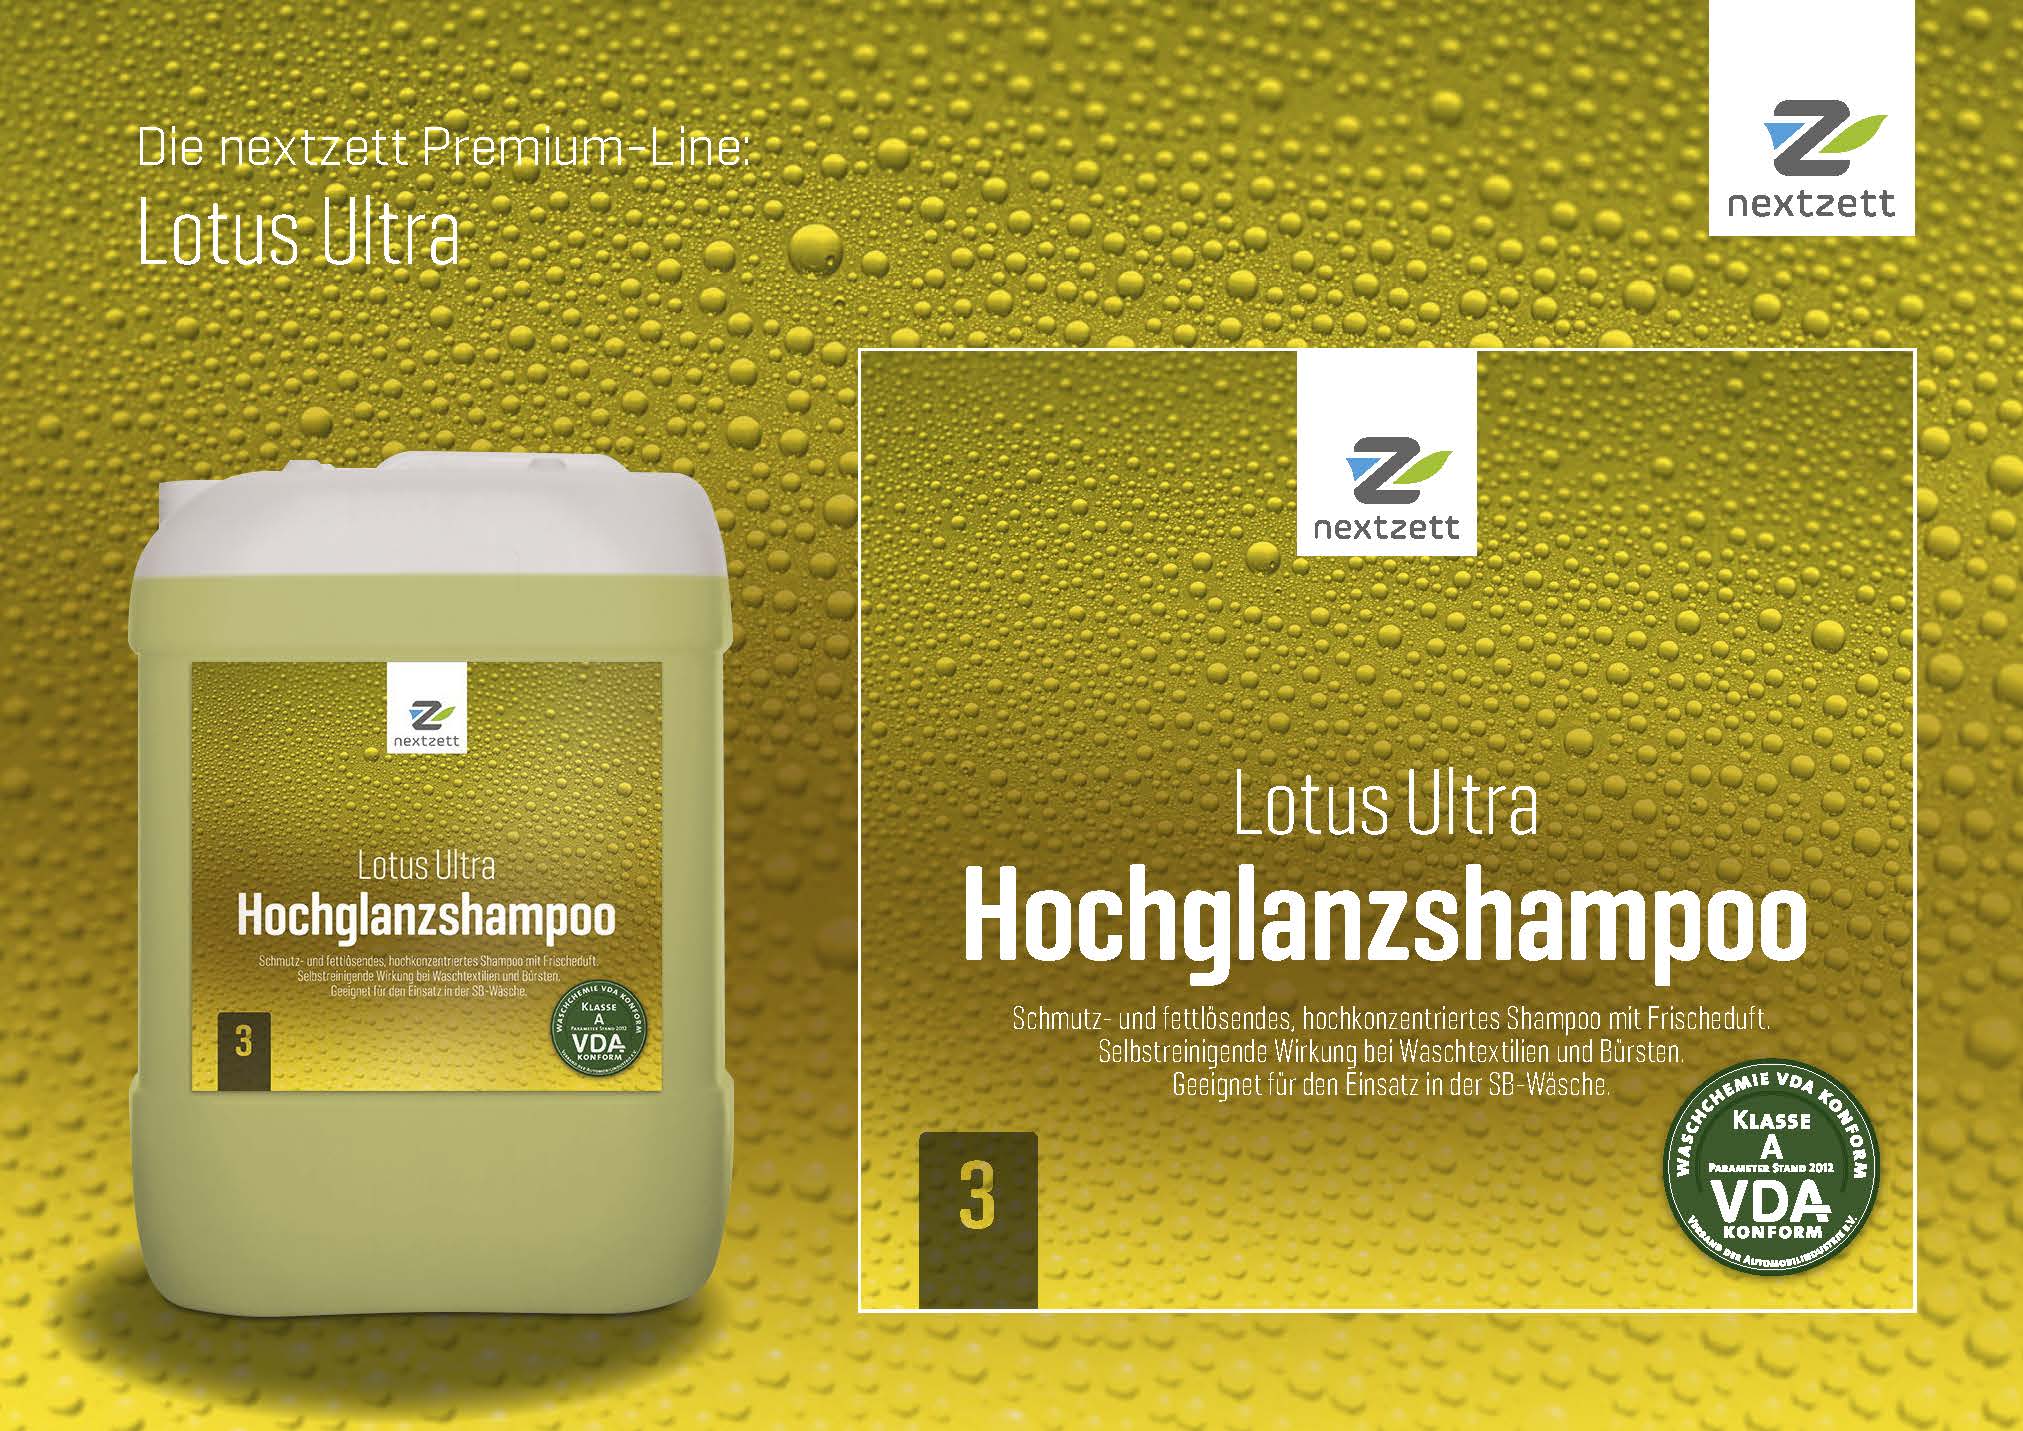 Nextzett Lotus Ultra Hochglanzshampoo - Flyer